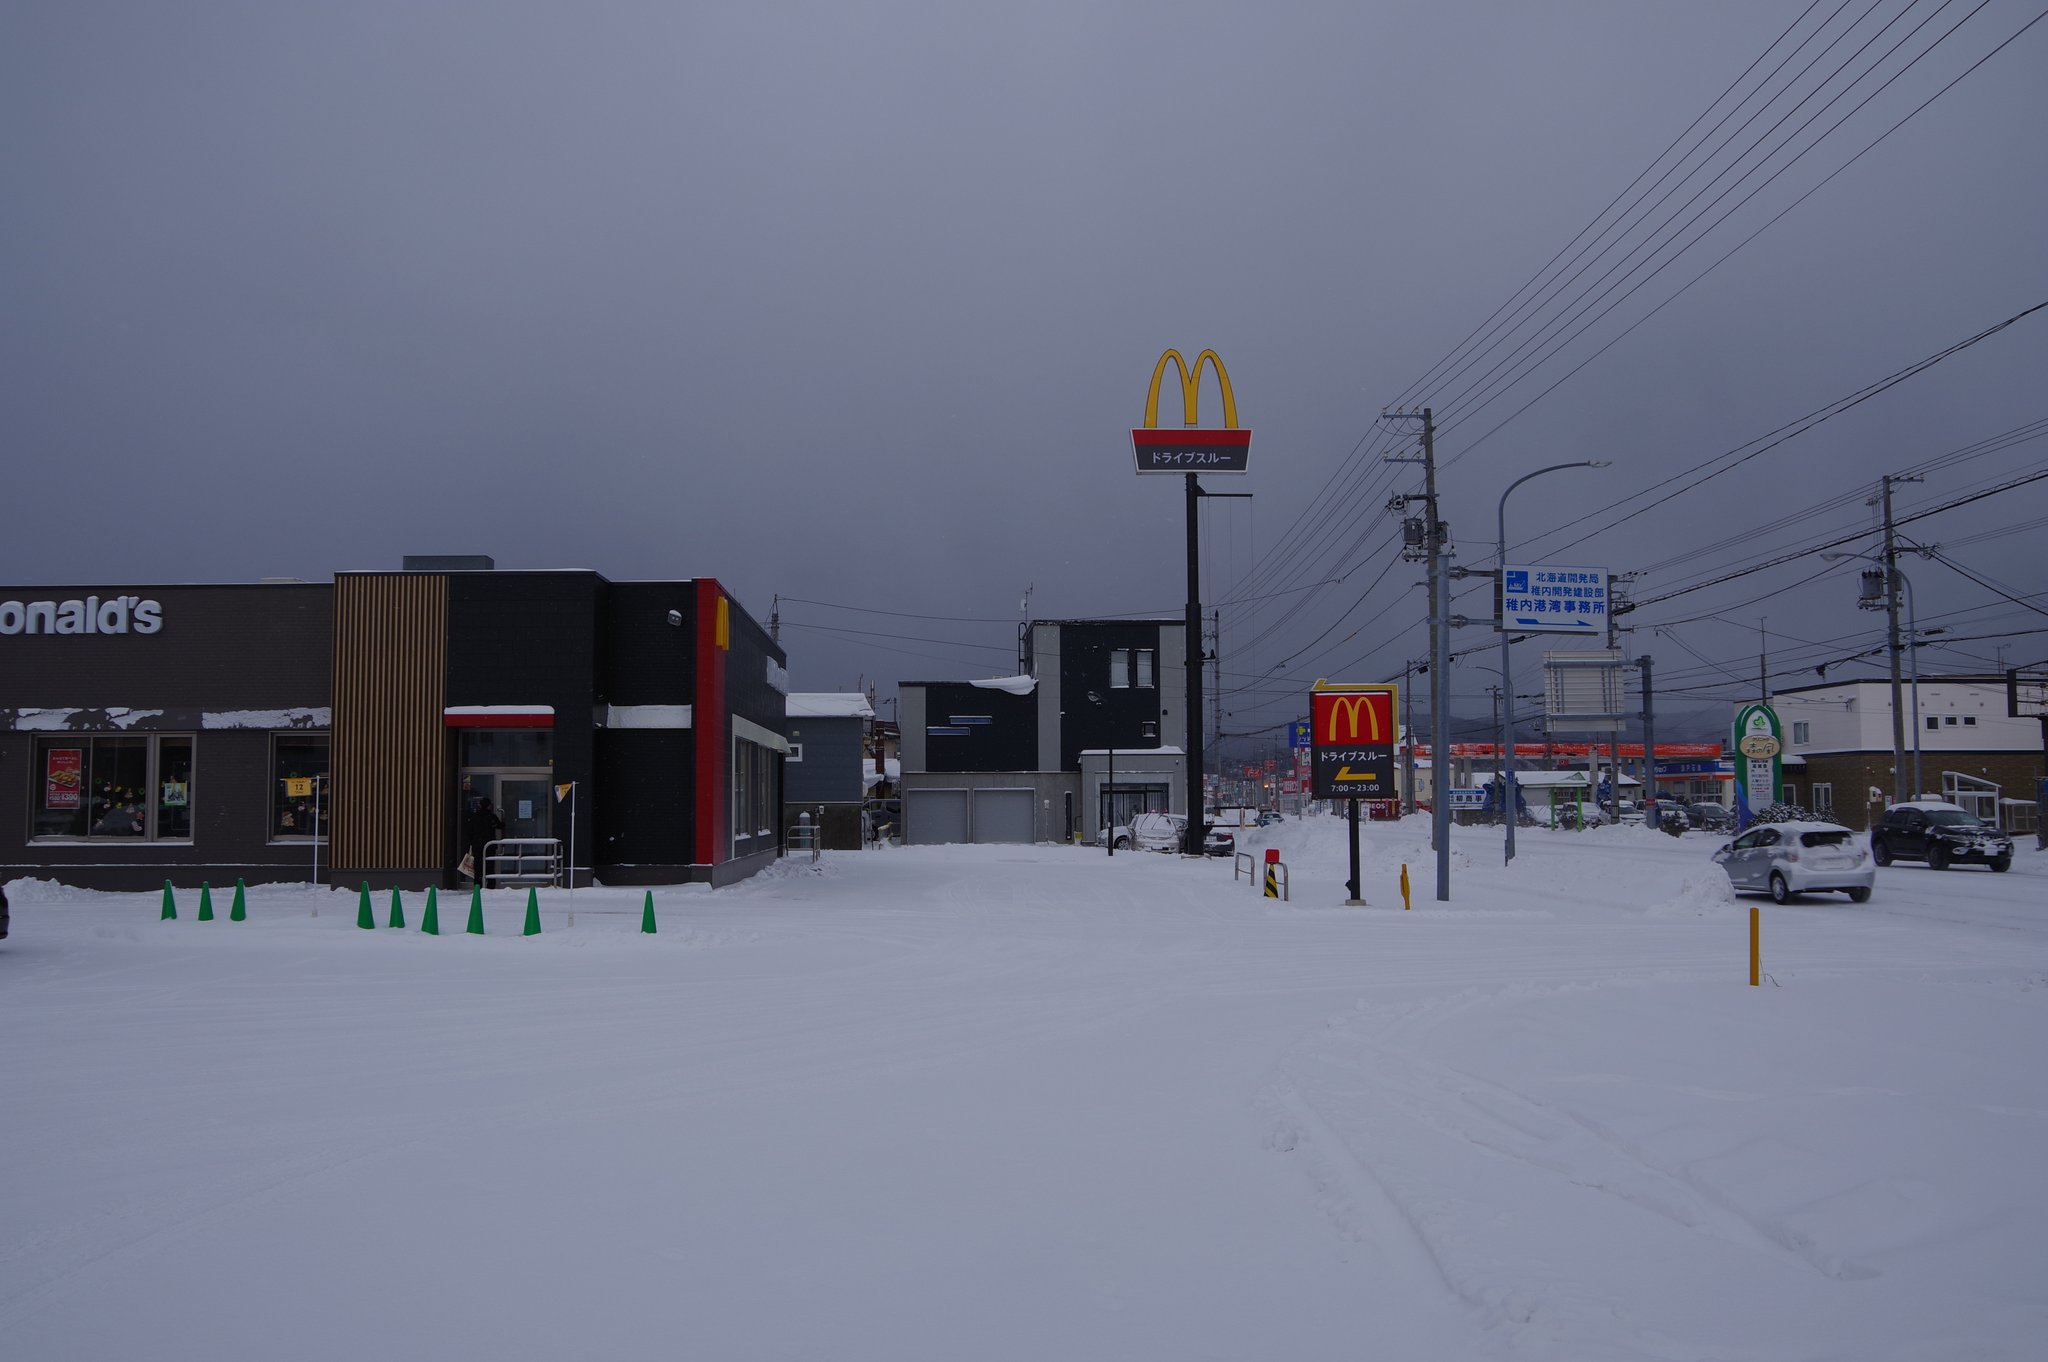 눈이 소복히 쌓인 맥도날드 매장 풍경.jpg